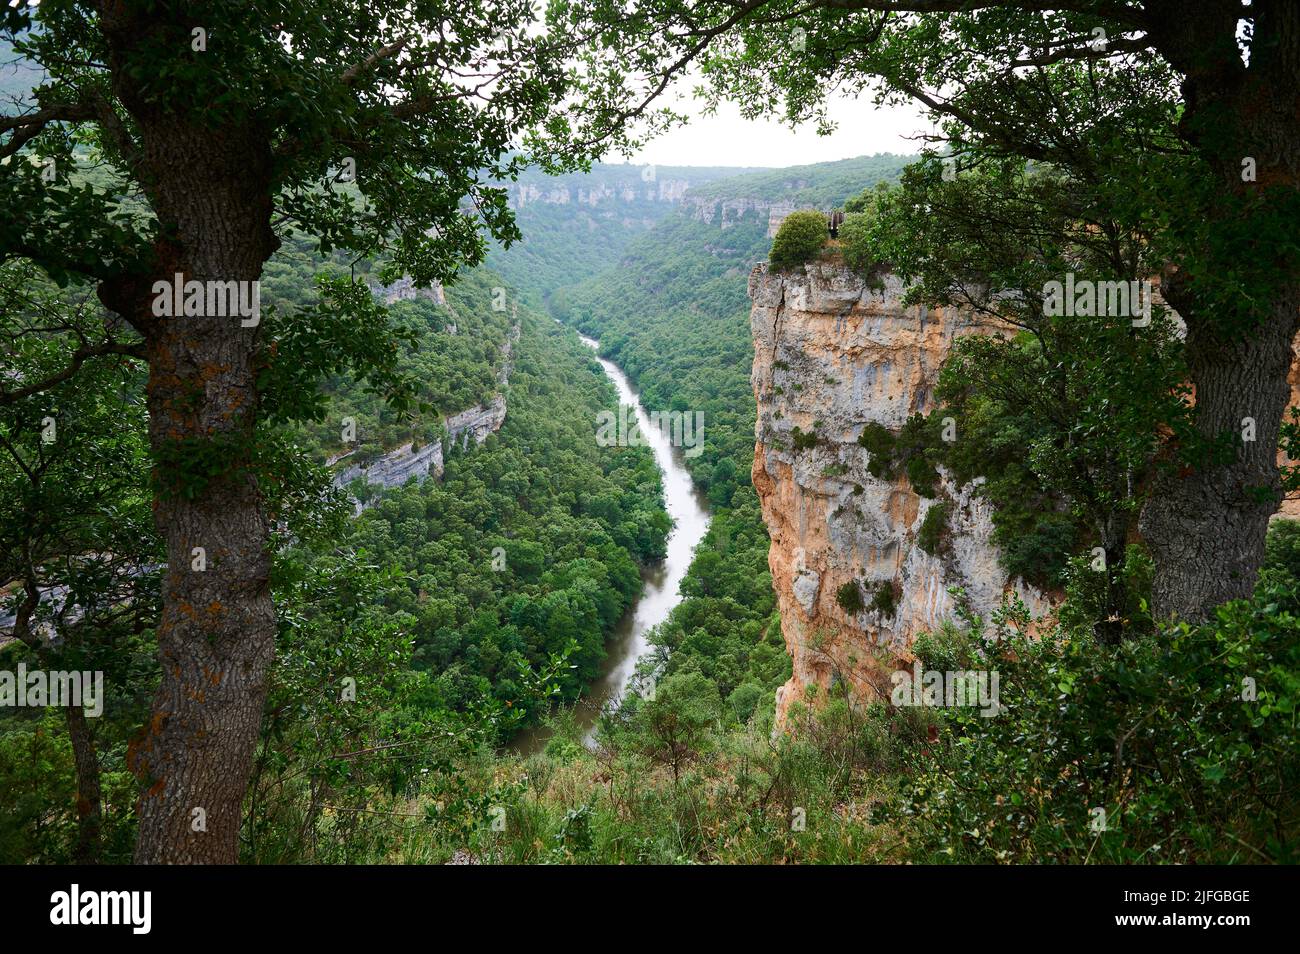 Ebro river seen from the viewpoint near Pesquera de Ebro, Burgos, Spain, Europe Stock Photo